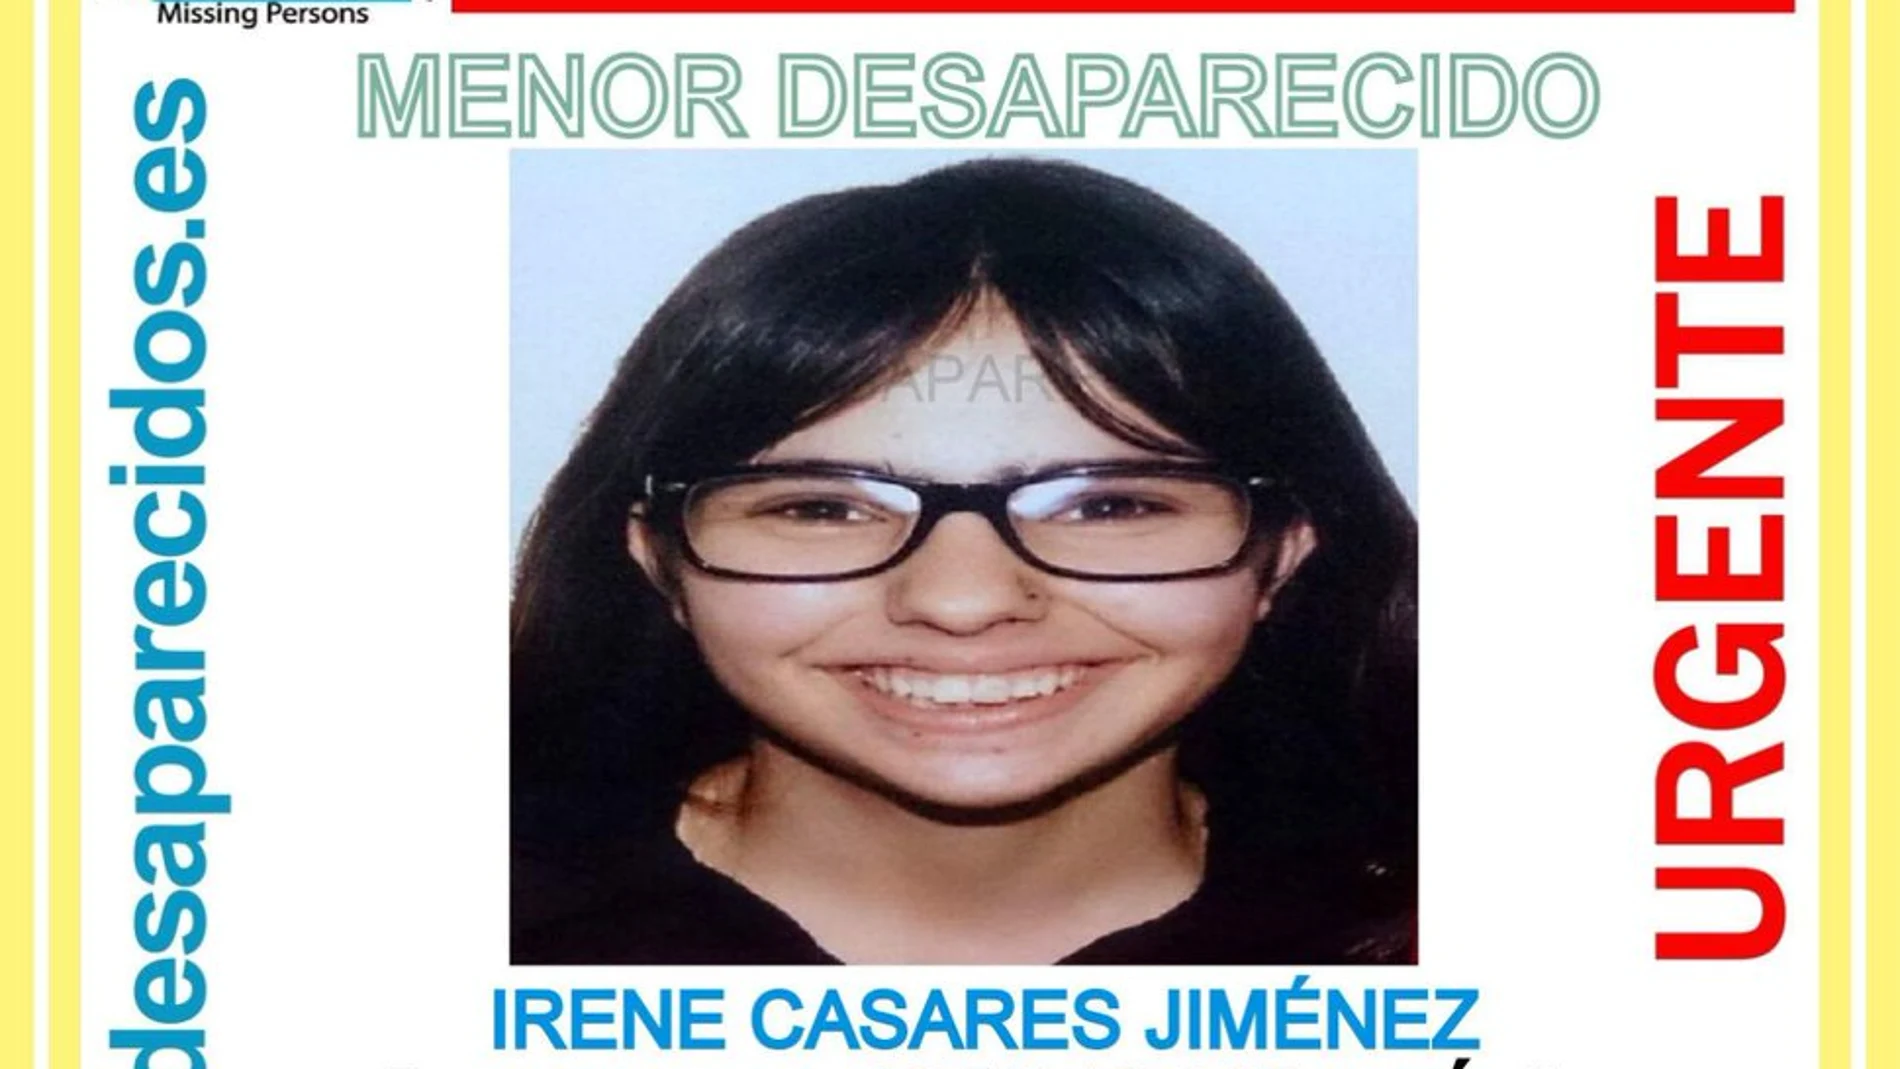 Cartel de búsqueda de Irene CAsares, desaparecida en Ávila